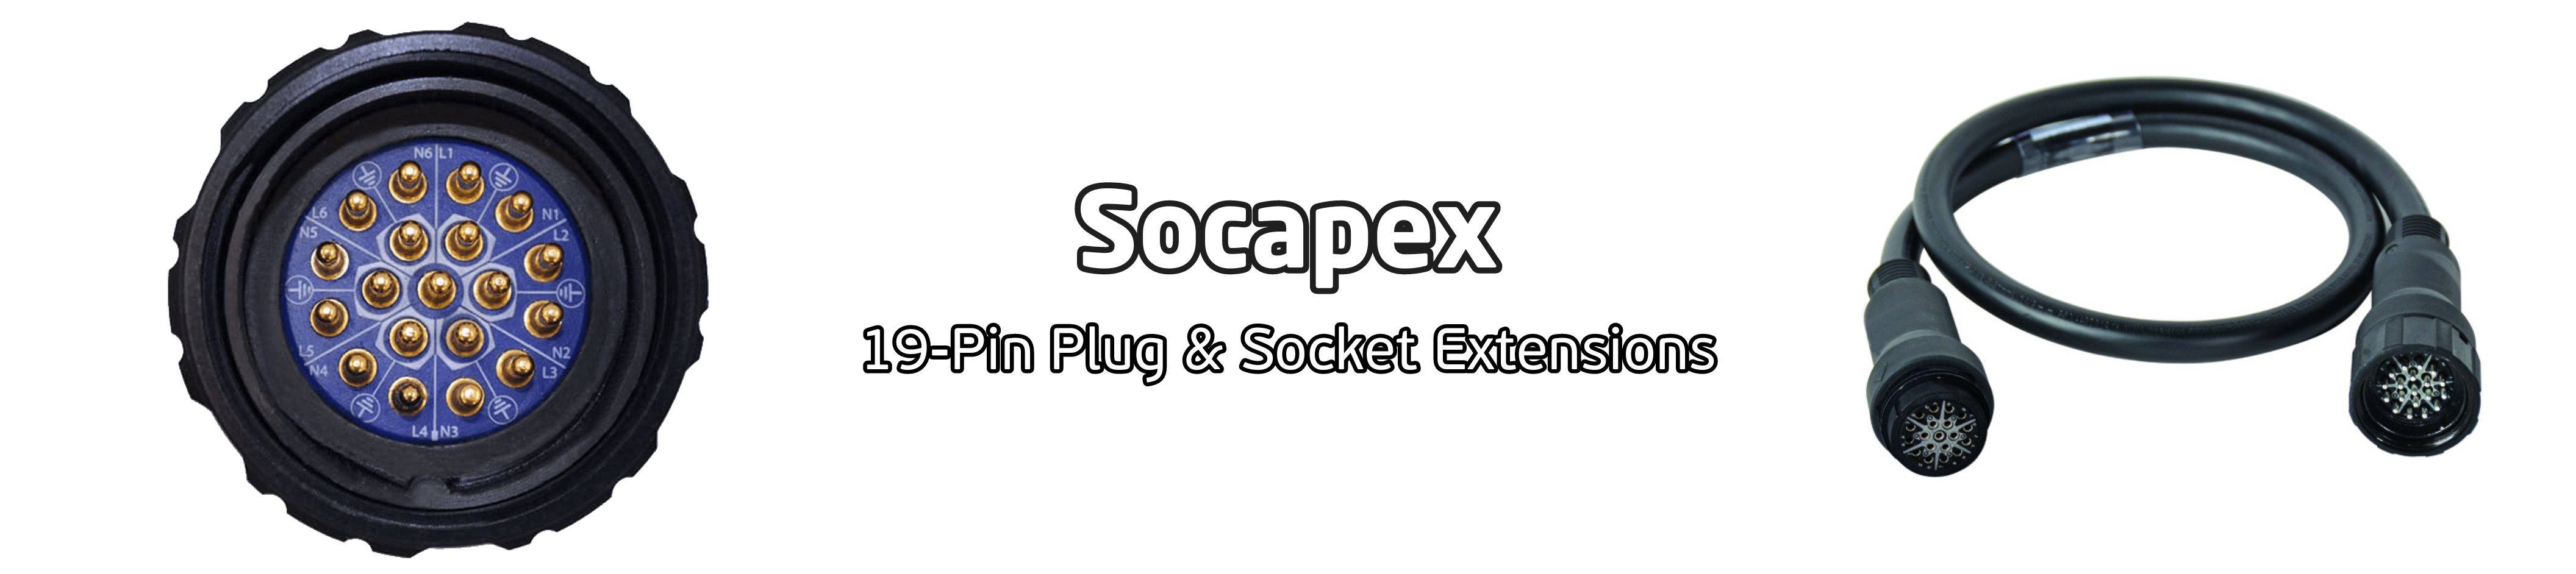 Socapex Extensions